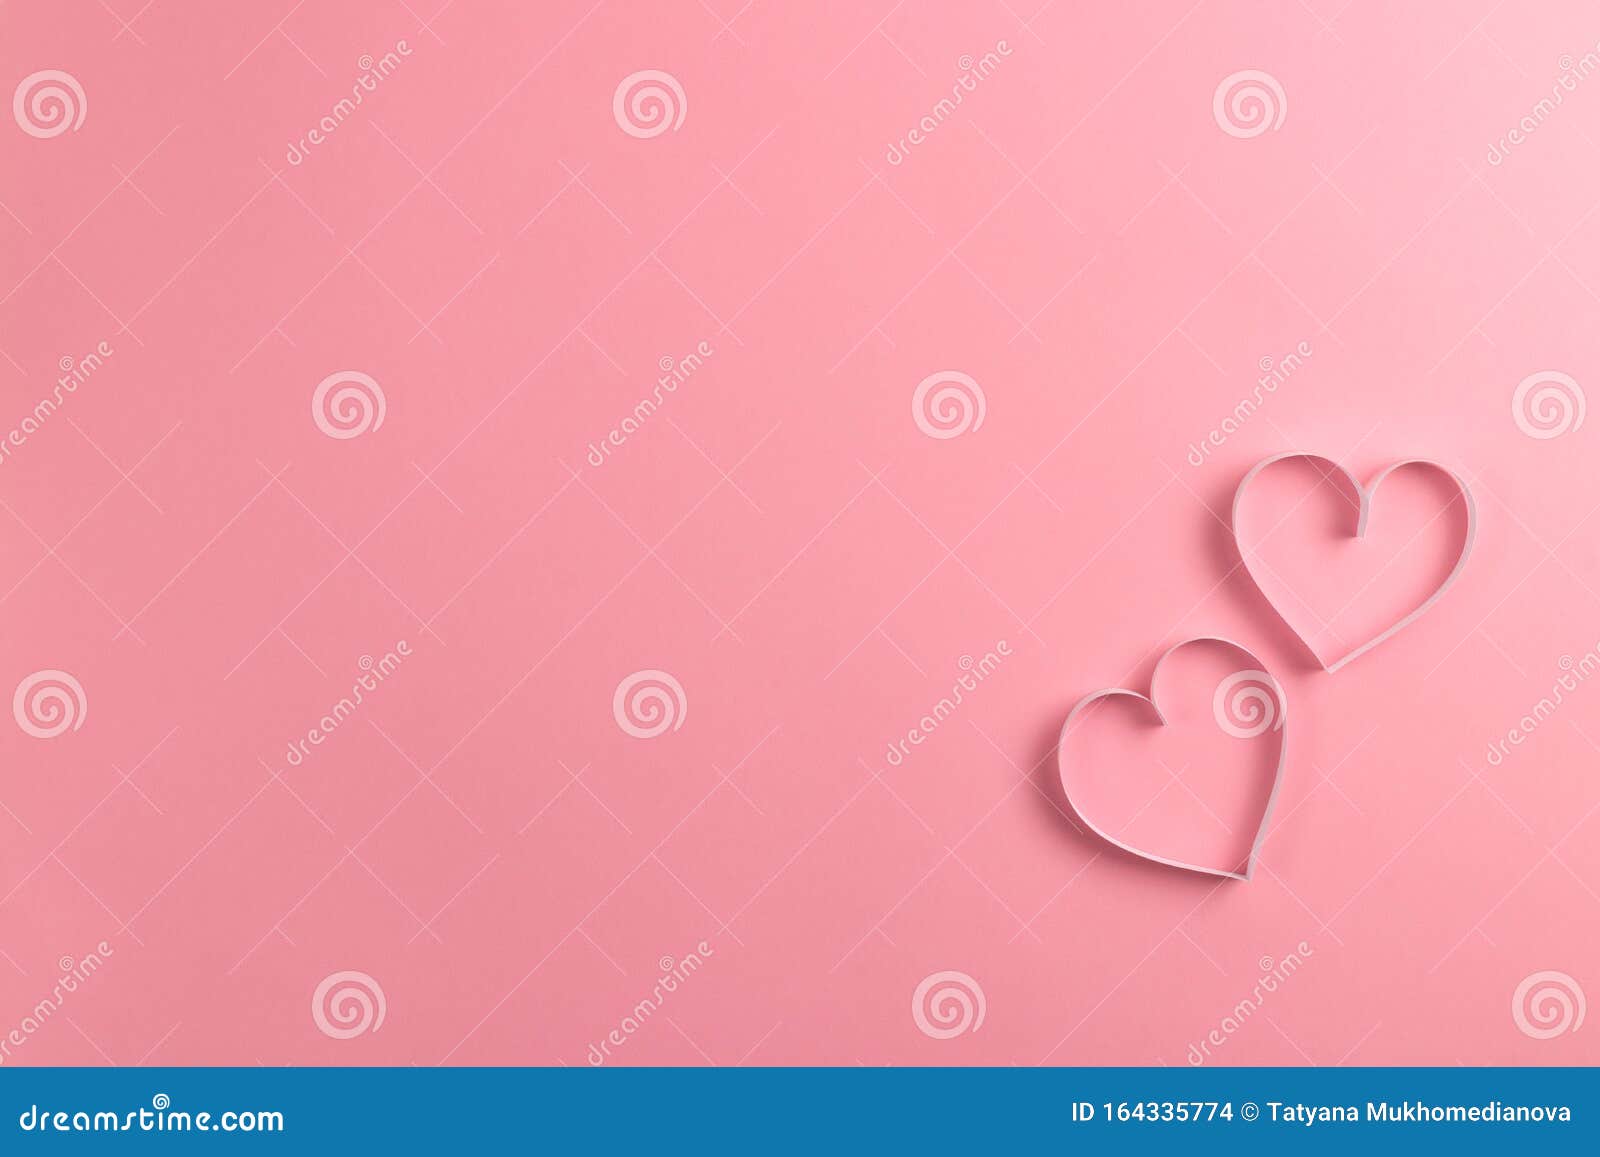 2月14日情人节作品纤细的粉红色背景和用纸剪掉的粉红心贺卡库存照片 图片包括有装饰 构成